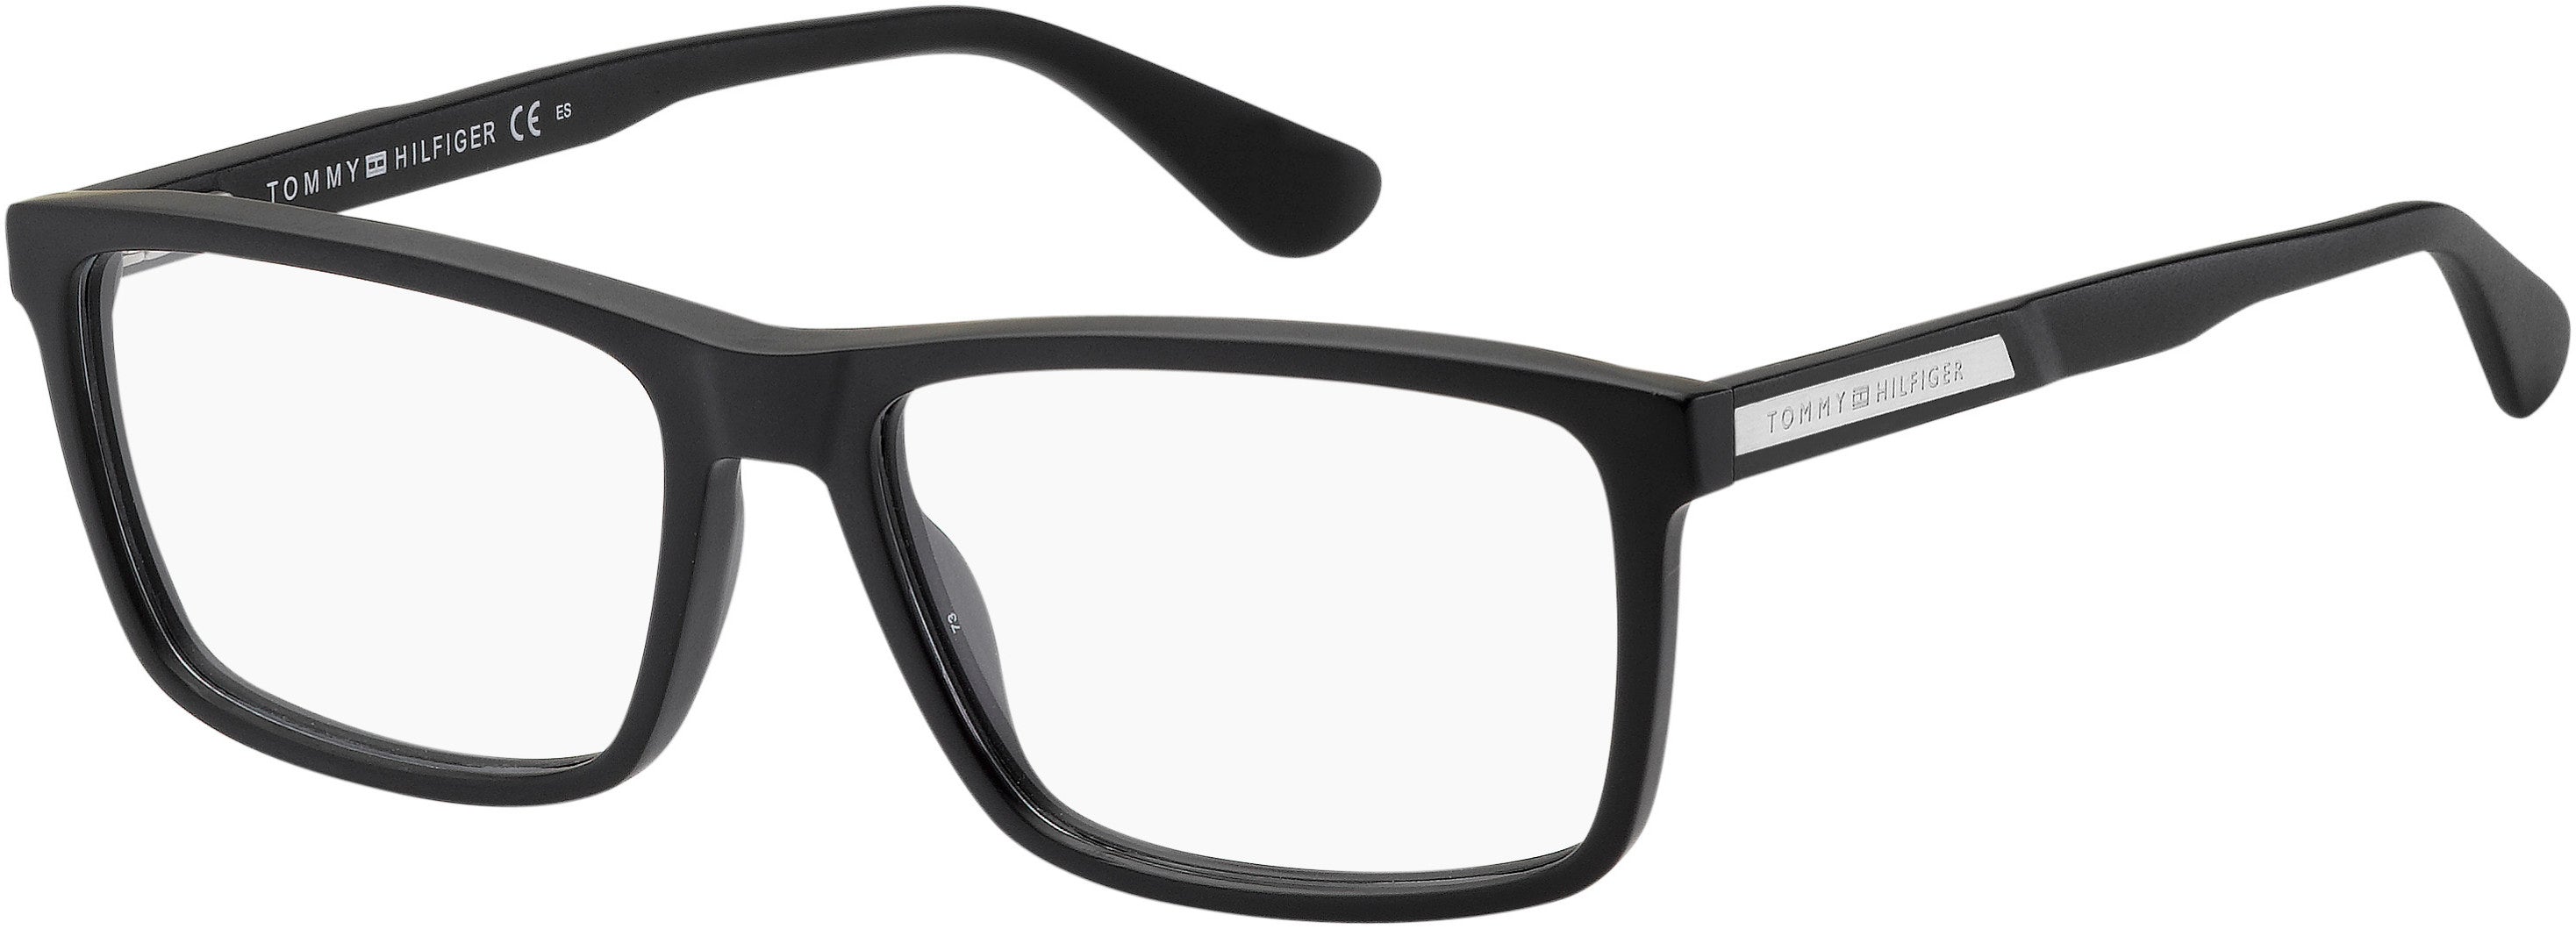 Tommy Hilfiger T. Hilfiger 1549 Rectangular Eyeglasses 0003-0003  Matte Black (00 Demo Lens)